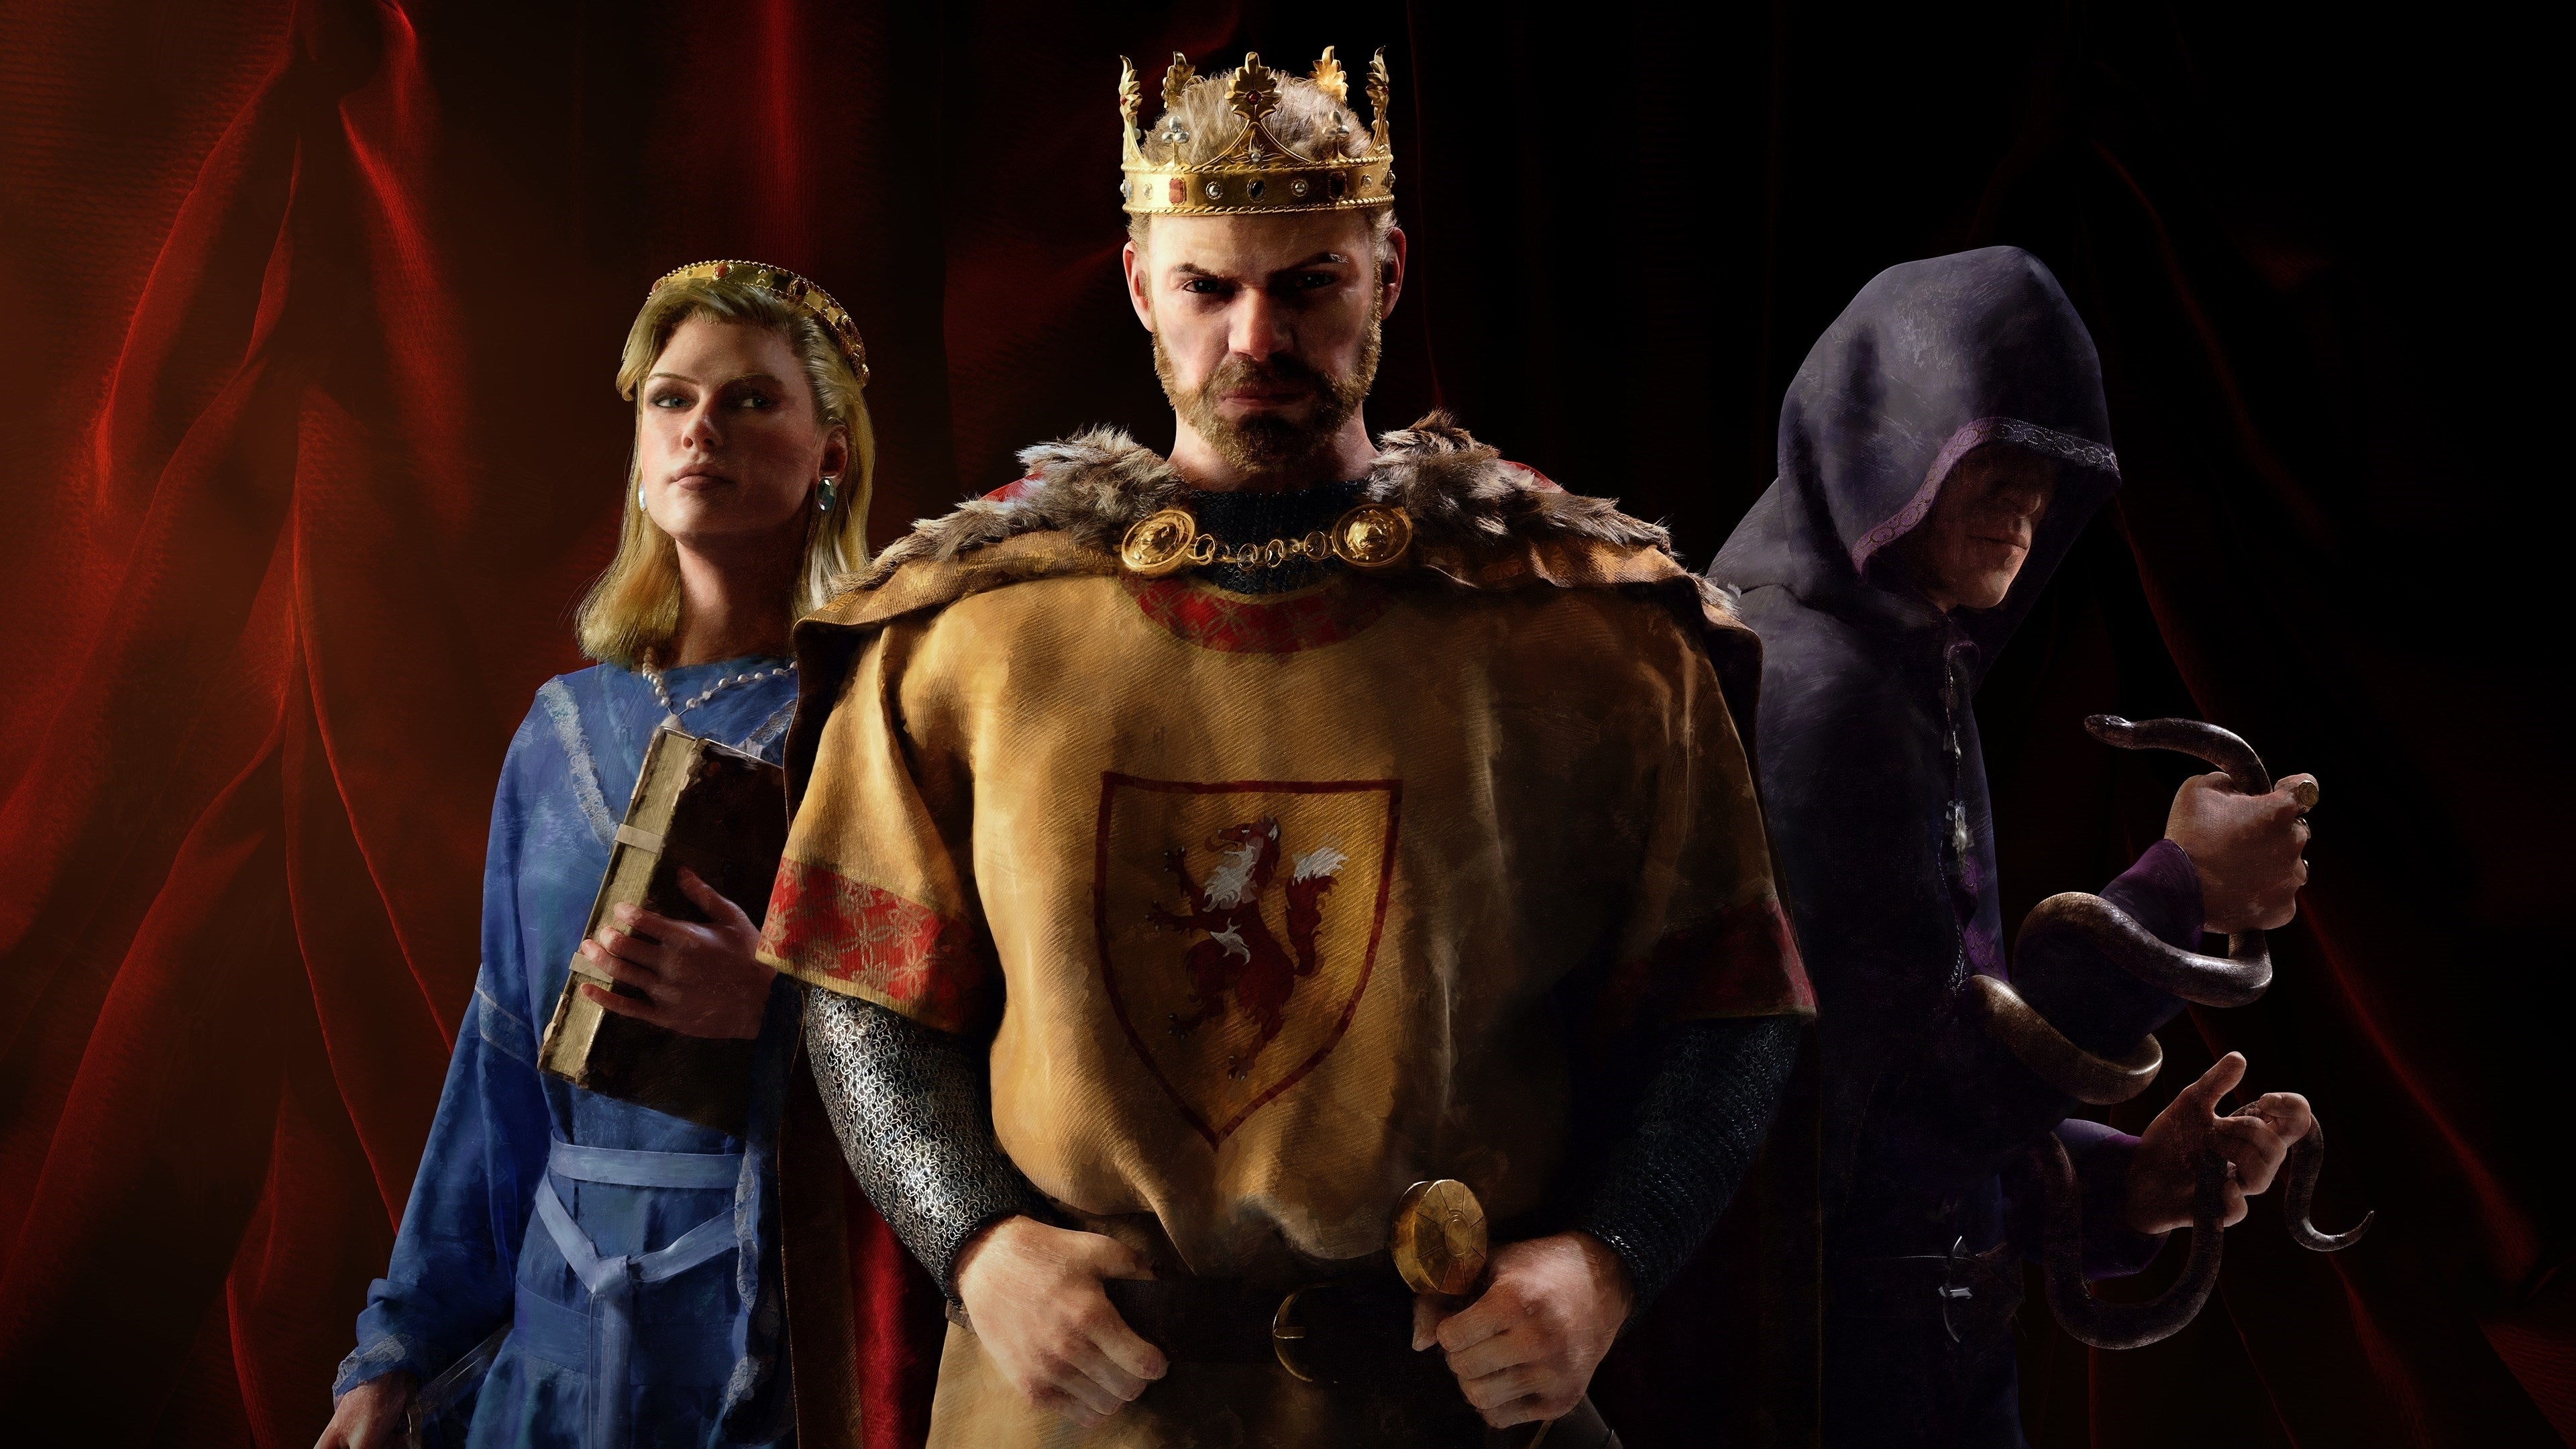 Bilder zu In Crusader Kings 3 setzt ihr mit Patch 1.3 Poesie-Folter ein